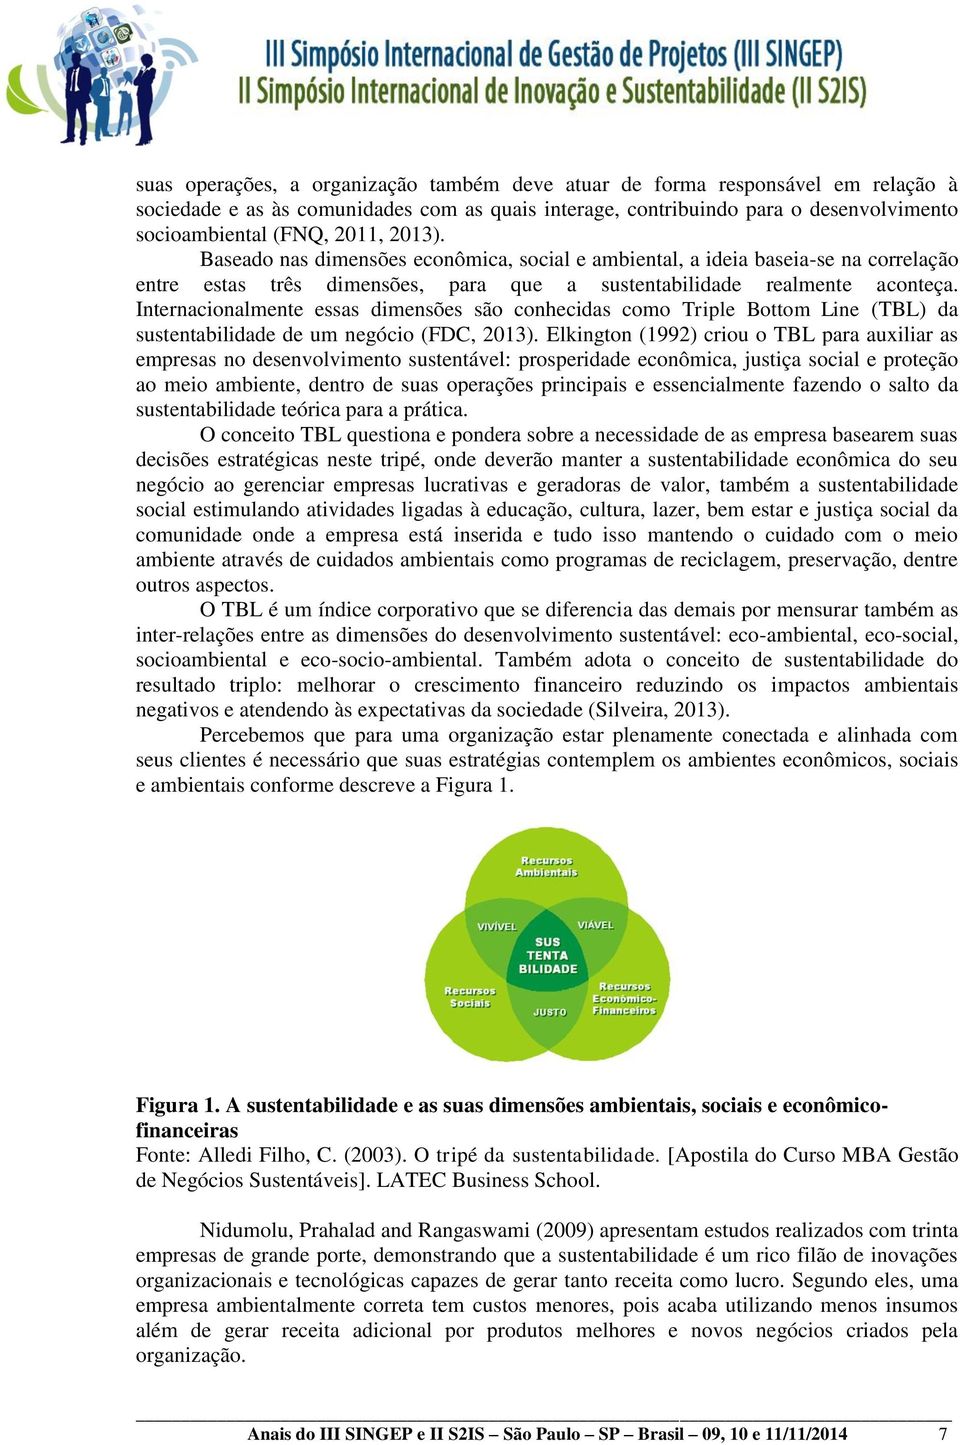 Internacionalmente essas dimensões são conhecidas como Triple Bottom Line (TBL) da sustentabilidade de um negócio (FDC, 2013).